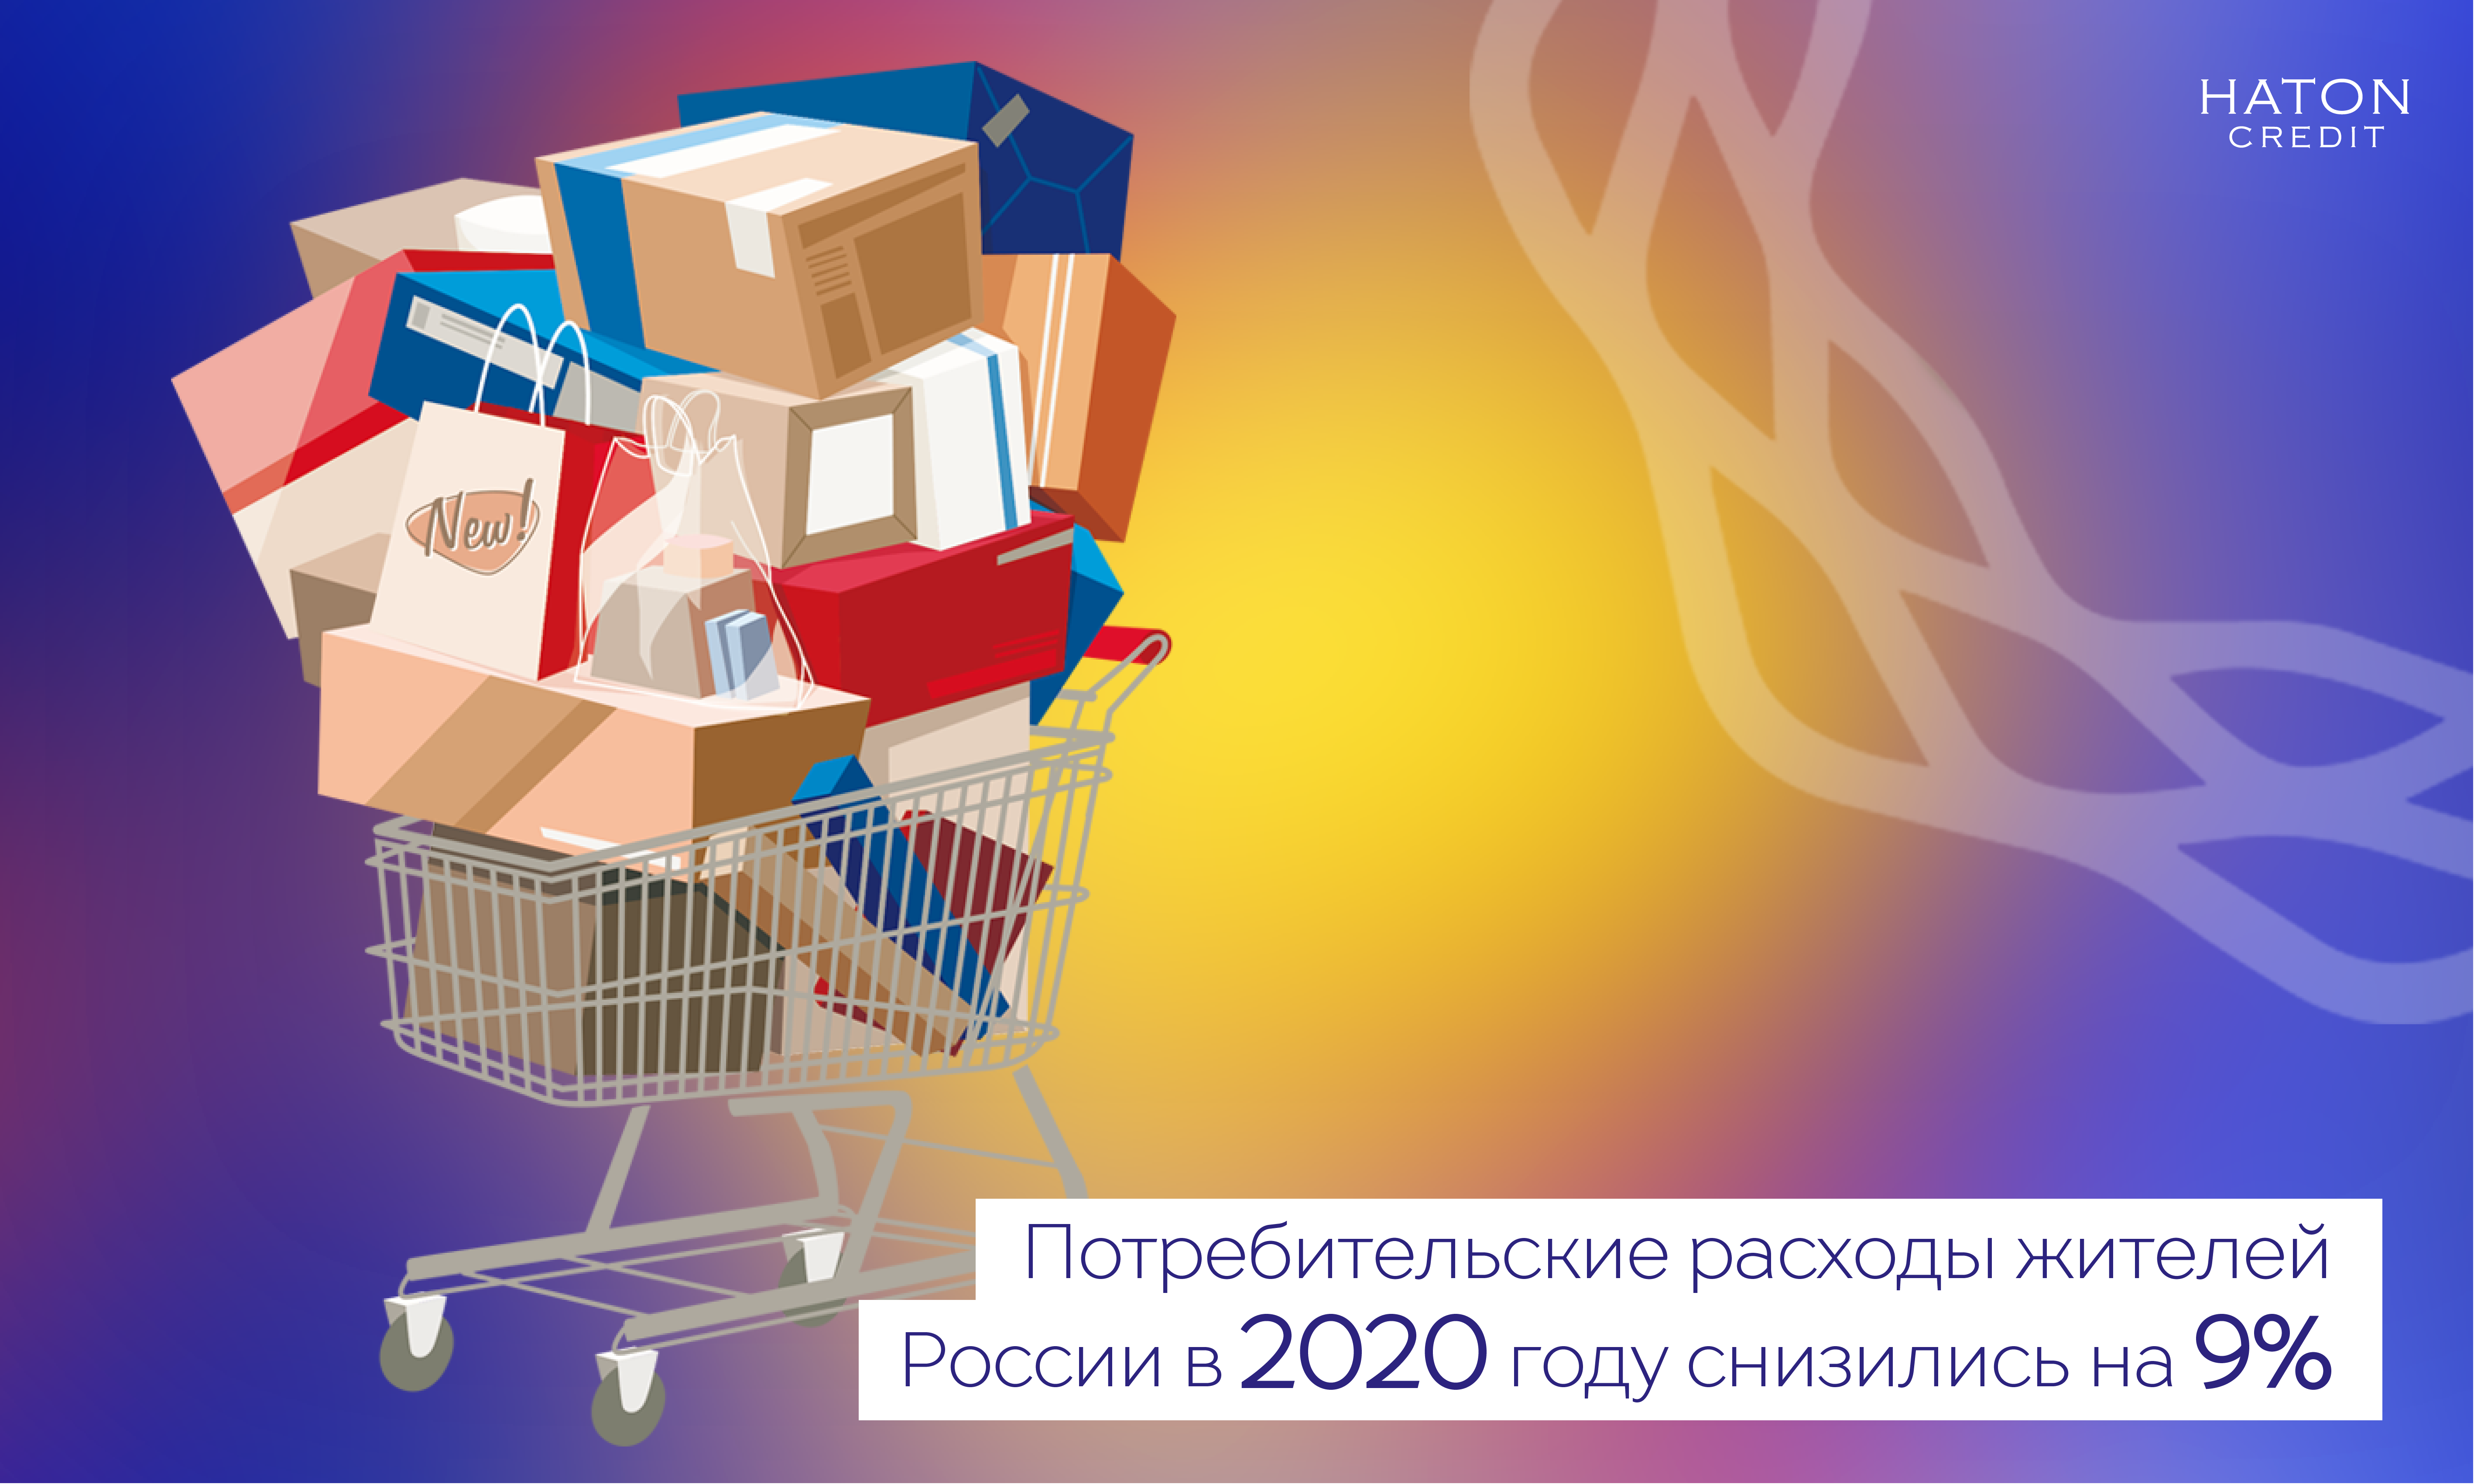 Потребительские расходы жителей России в 2020 году снизились на 9%.